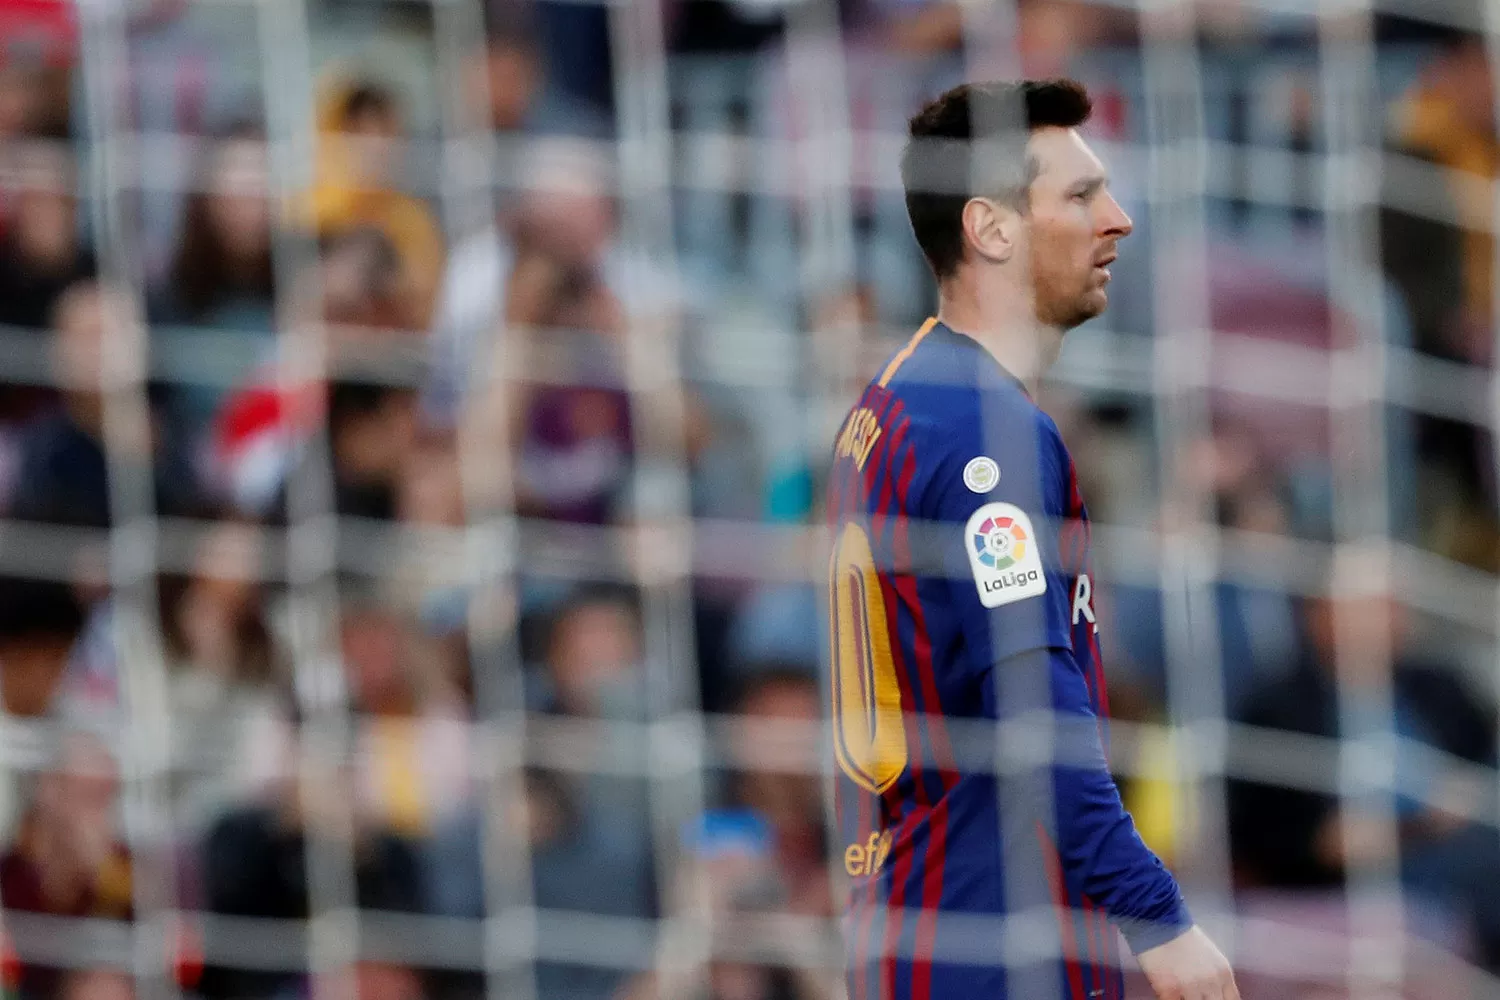 RECONOCIDO. Messi fue ovacionado por los hinchas en el duelo por la Liga.